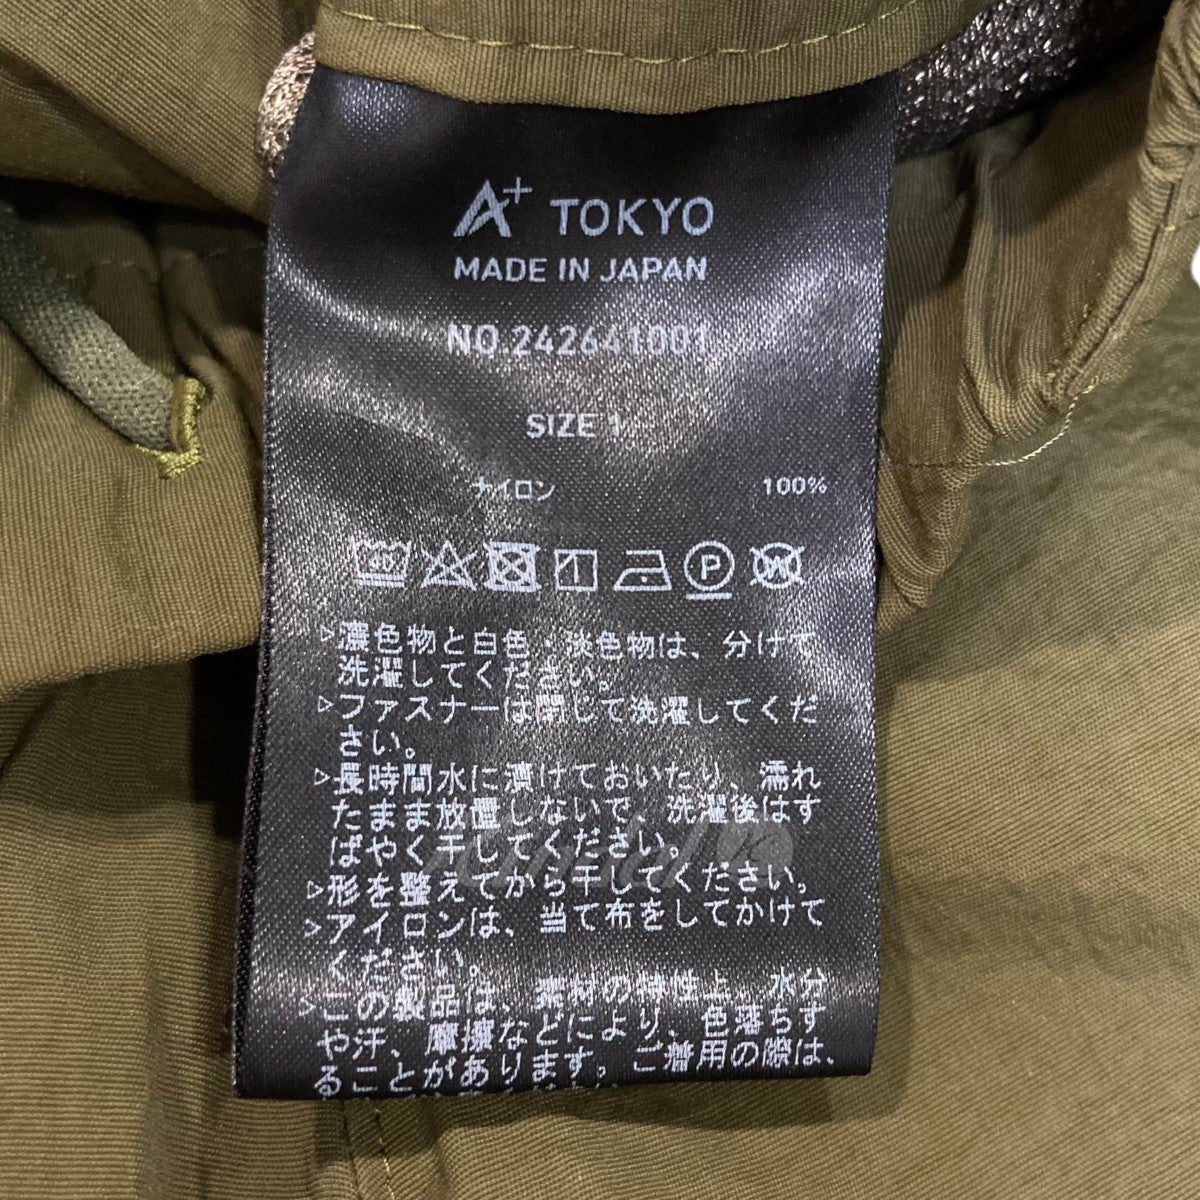 A+TOKYO(エープラストウキョウ) 「SYNTHETIC」ナイロンカーゴパンツ 